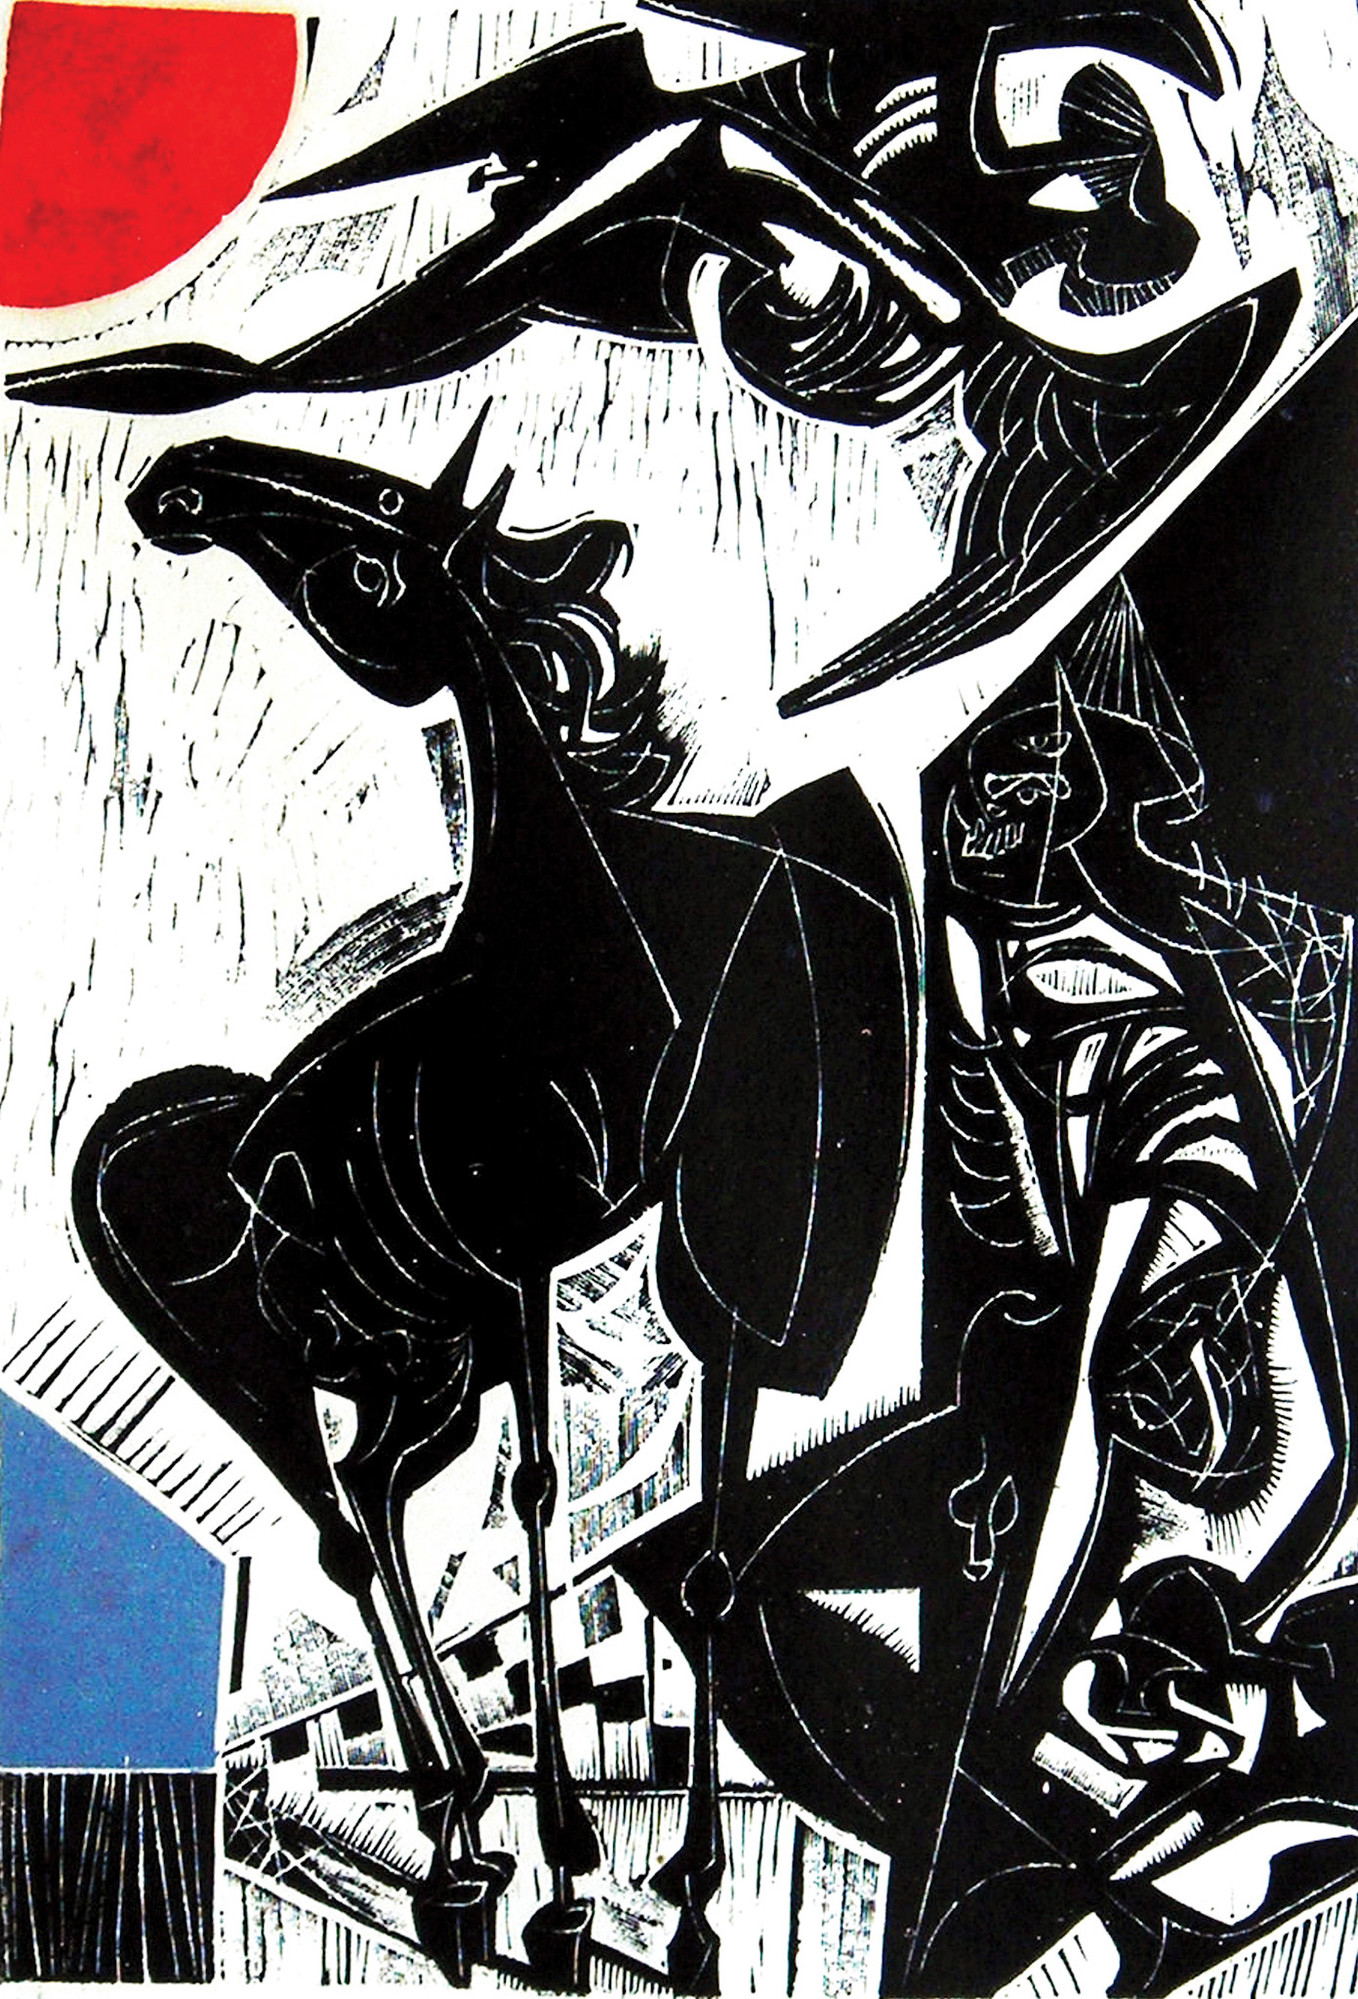 Vincent Hložník, 'Untitled', 1962, linocut.